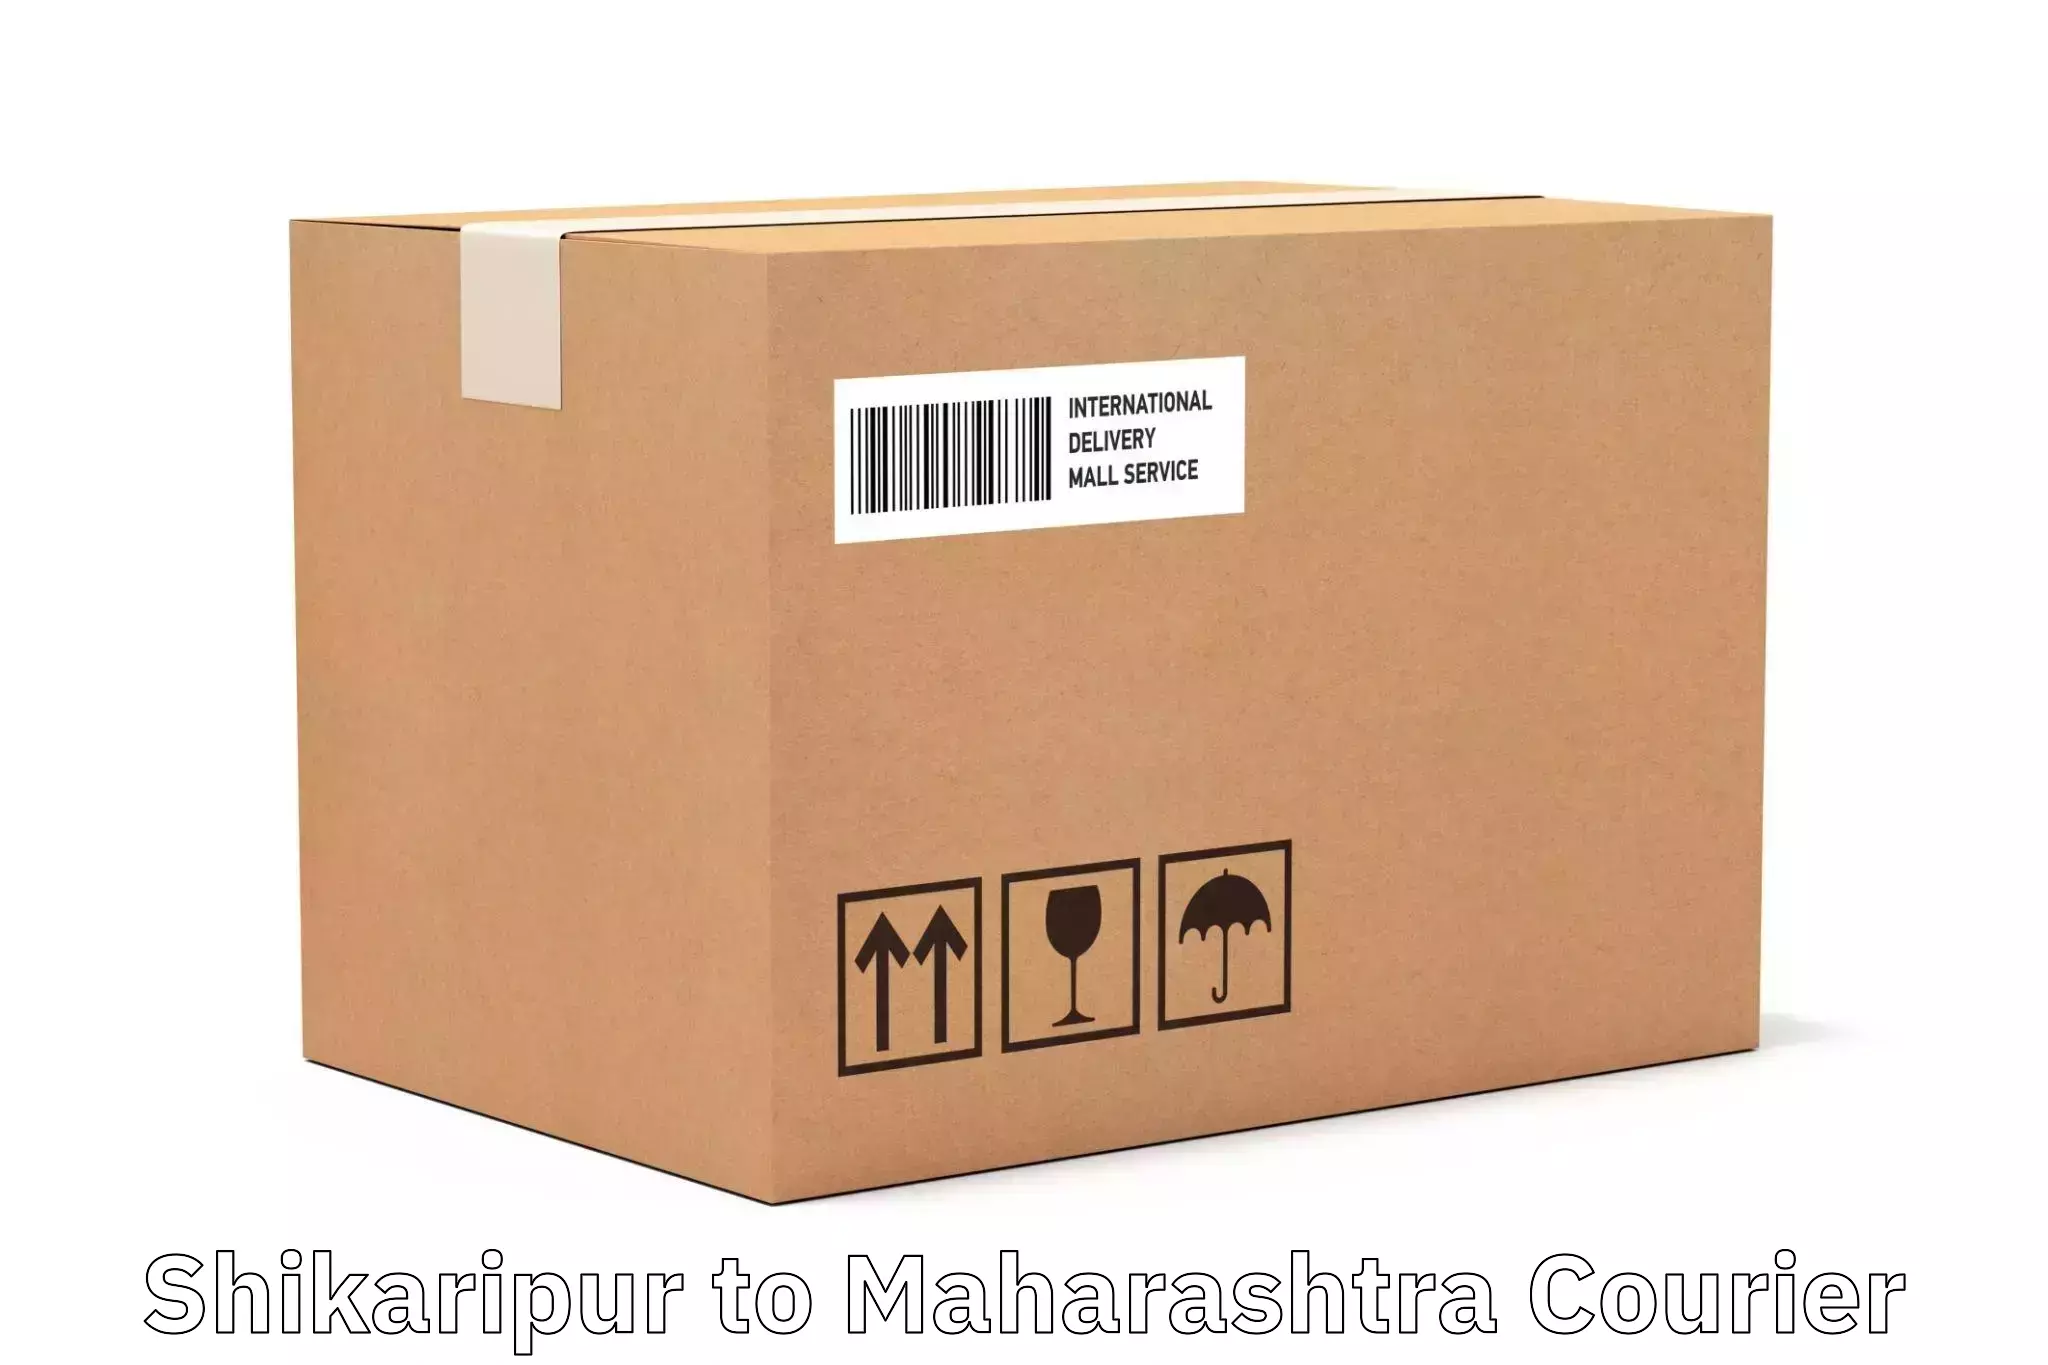 Customizable delivery plans Shikaripur to Maharashtra